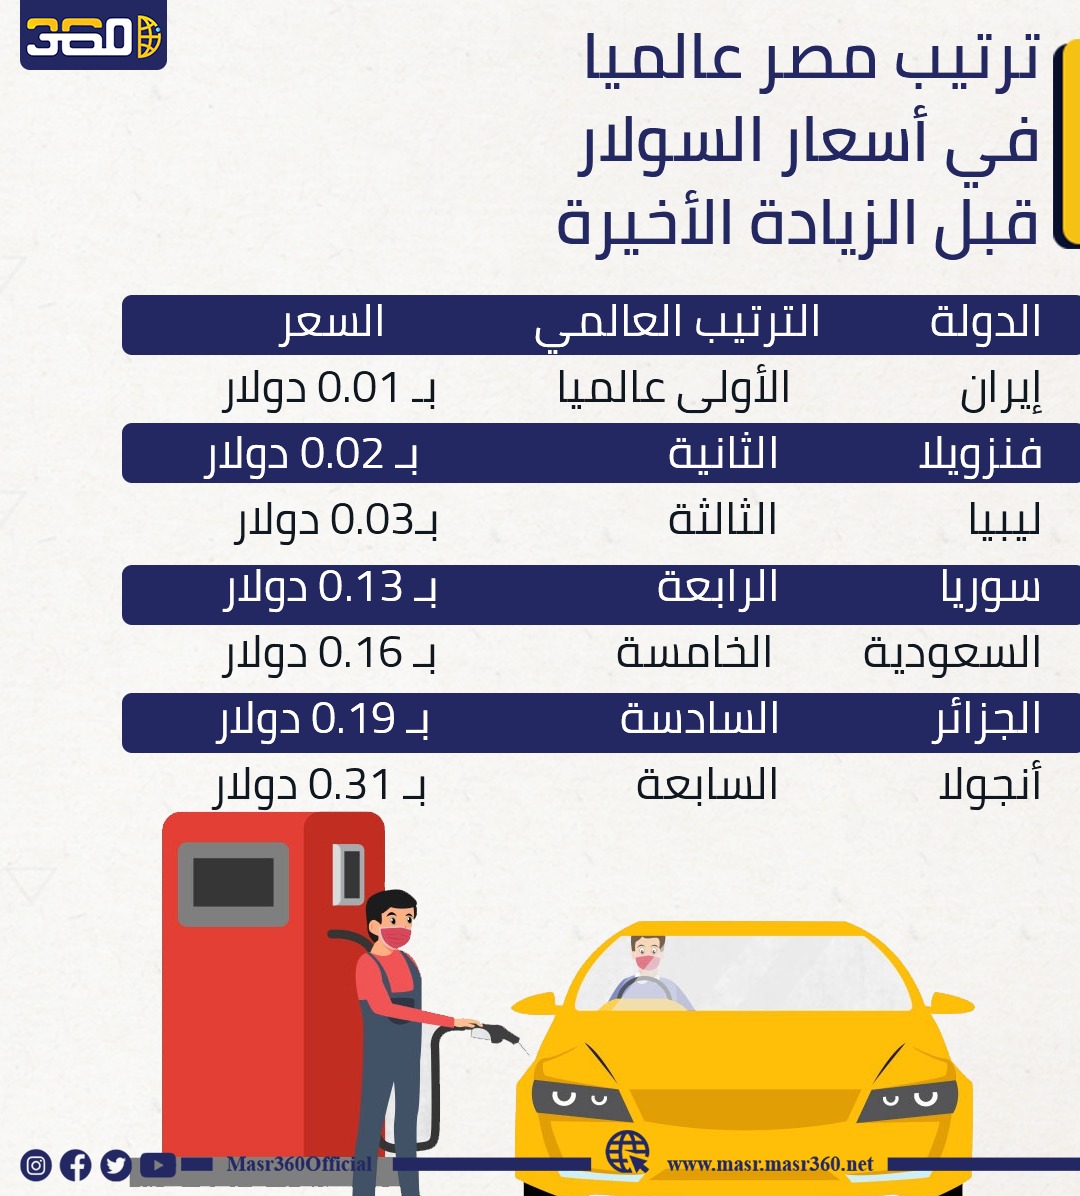 ارخص سعر في مصر 🇪🇬